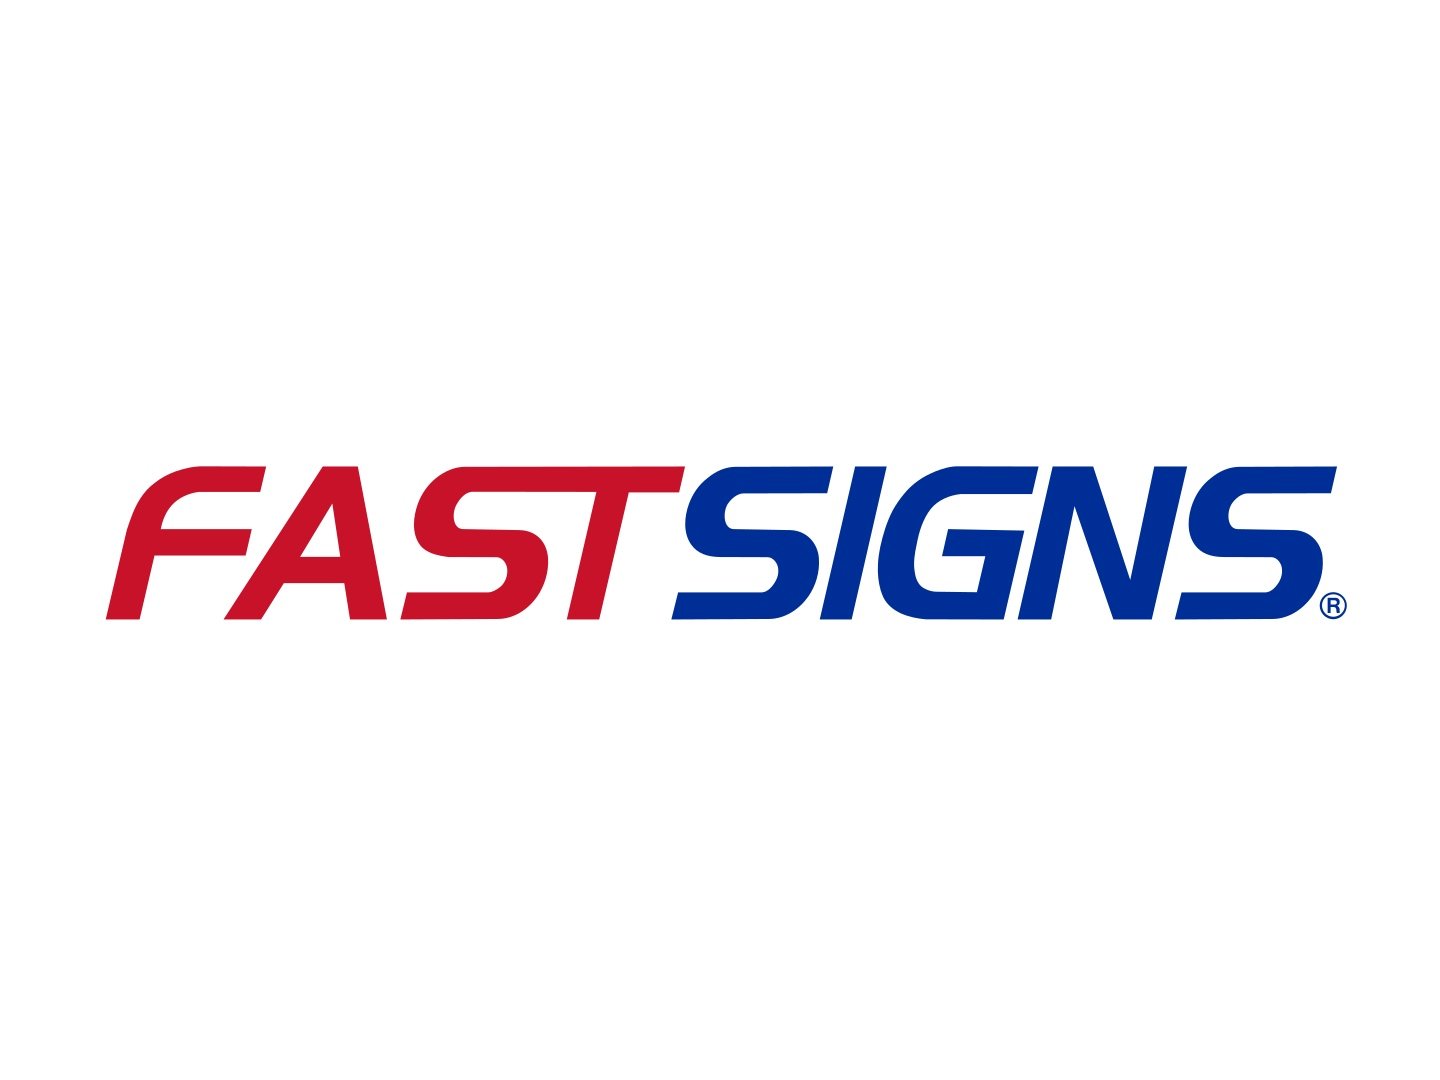 Fastsigns_logo.jpg